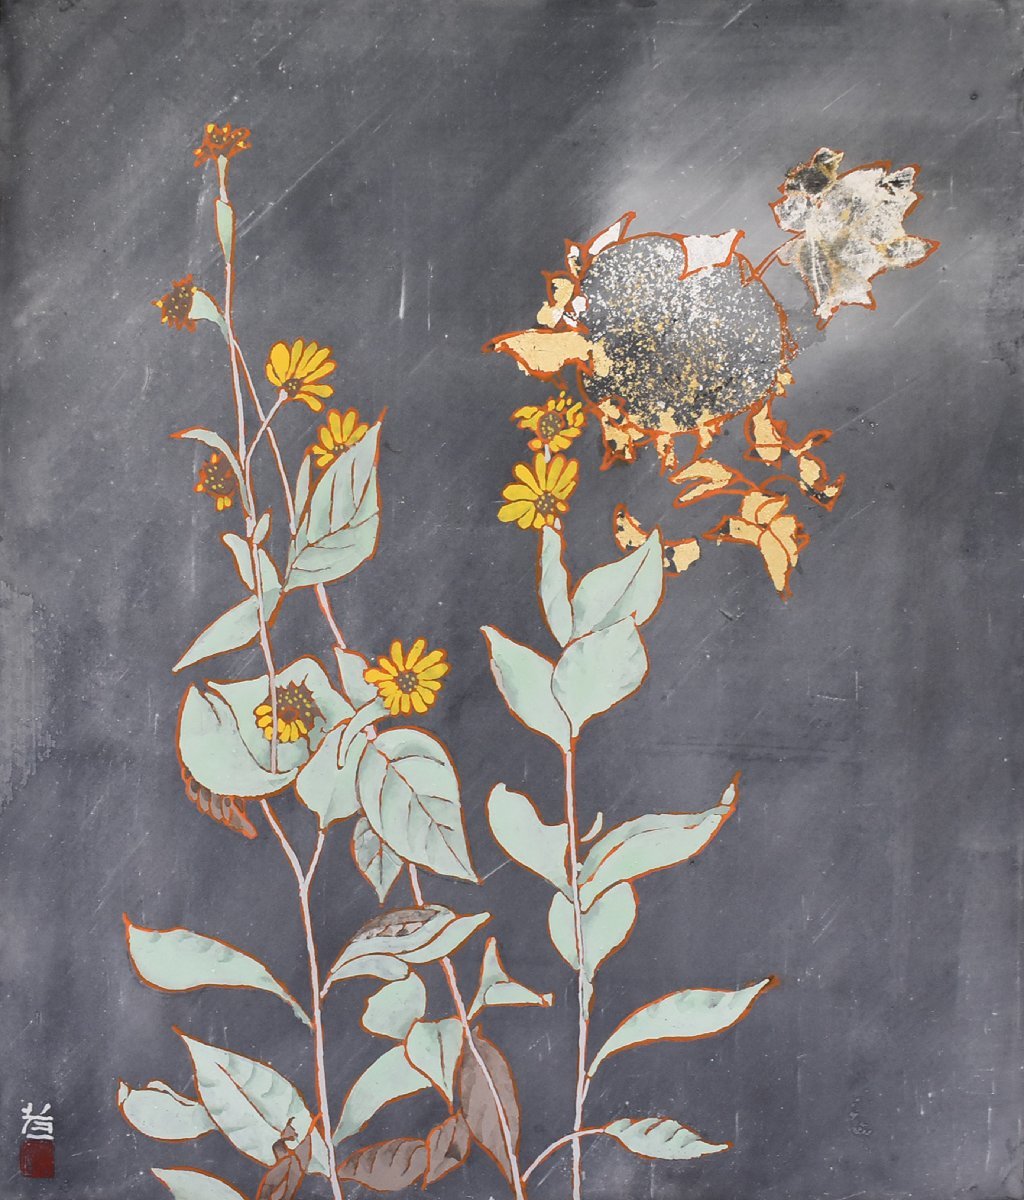 [सेइको गैलरी - 5, प्रदर्शन पर 500 वस्तुएँ! अपना पसंदीदा काम ढूंढें] लोकप्रिय जापानी चित्रकार का काम कोइची सुजुकी 10एफ नेक्स्ट डोर एक फ्रेम के साथ आता है, चित्रकारी, जापानी पेंटिंग, फूल और पक्षी, पक्षी और जानवर